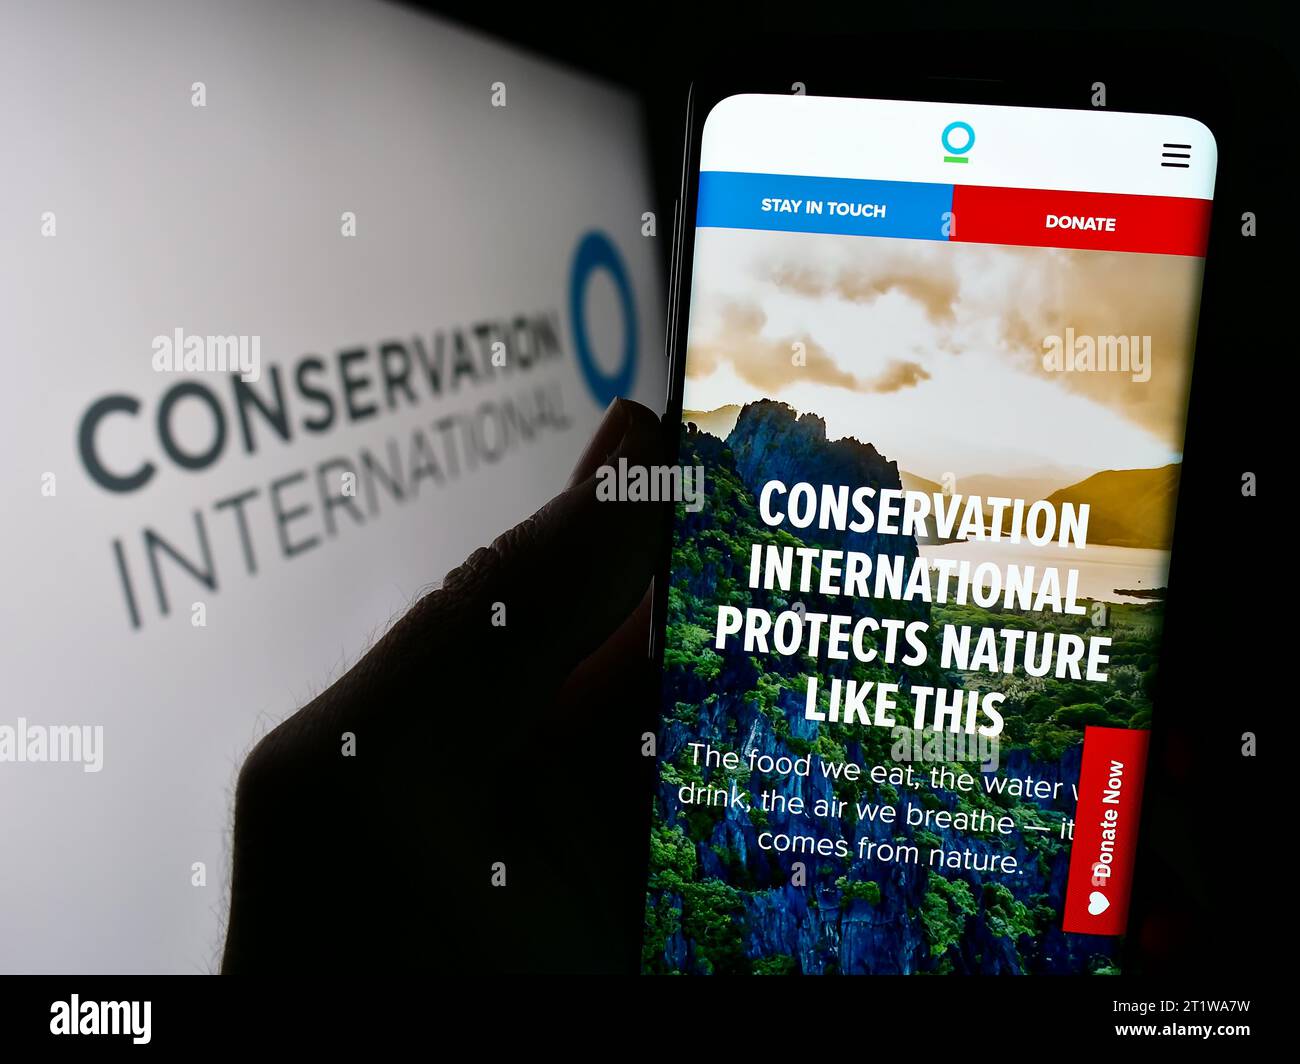 Persona que sostiene el teléfono móvil con la página web de la organización ambiental Conservación Internacional (CI) con el logotipo. Enfoque en el centro de la pantalla del teléfono. Foto de stock